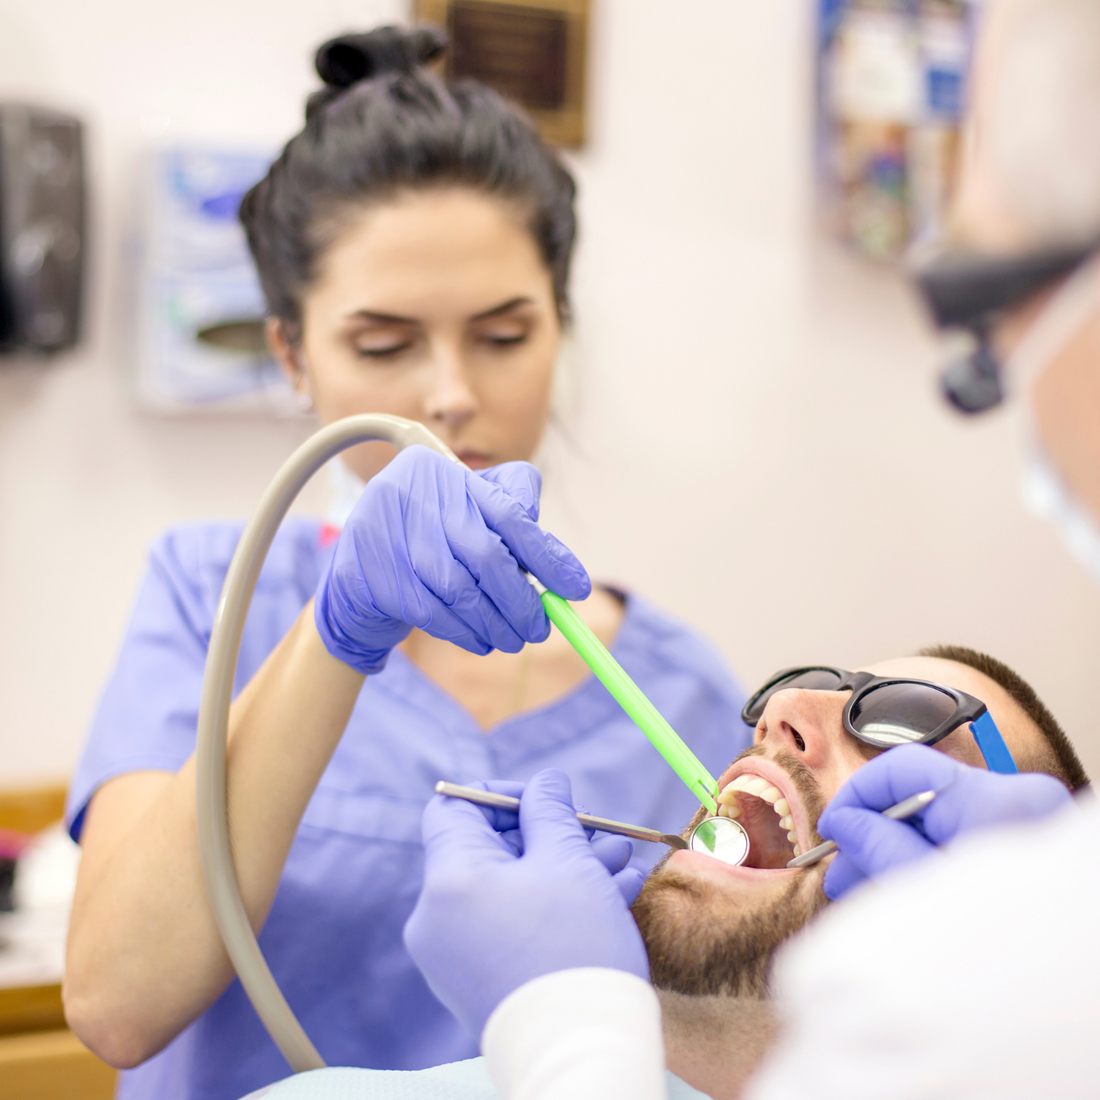 Choosing Dental Assistant as your career in Ontario